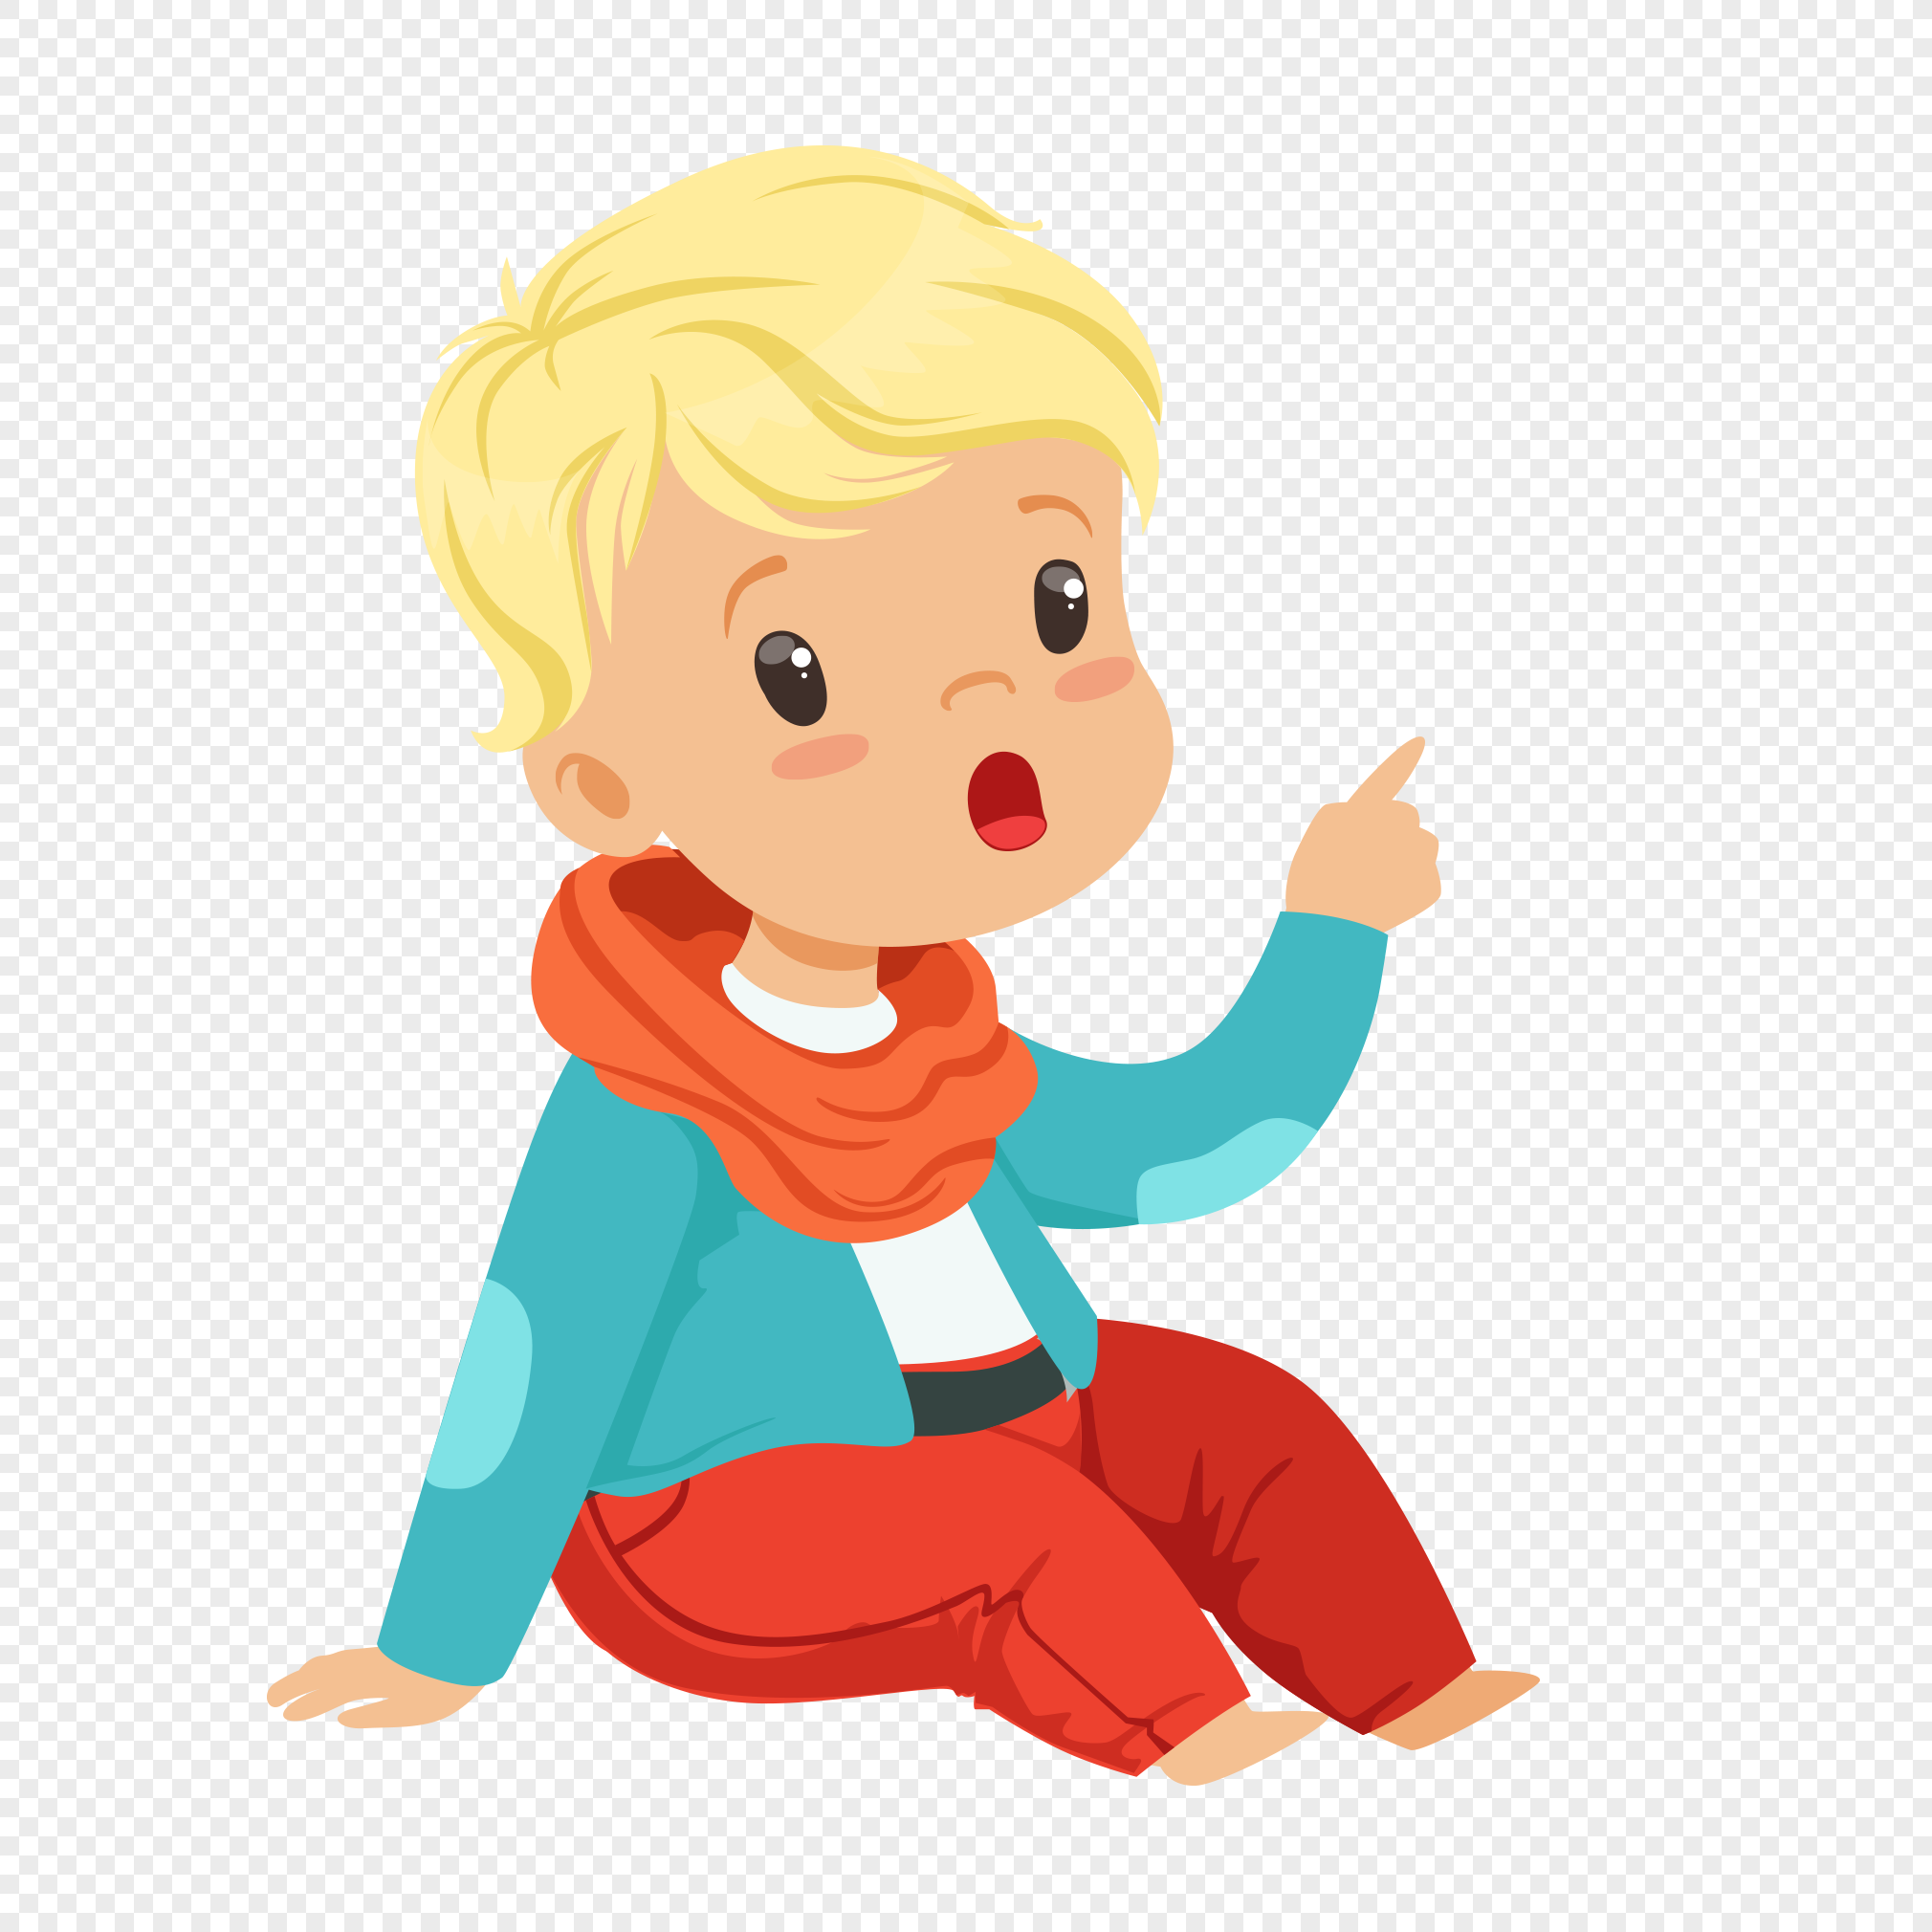 Personaje De Dibujos Animados De Niño Pequeño Sentado En El Suel Imagen